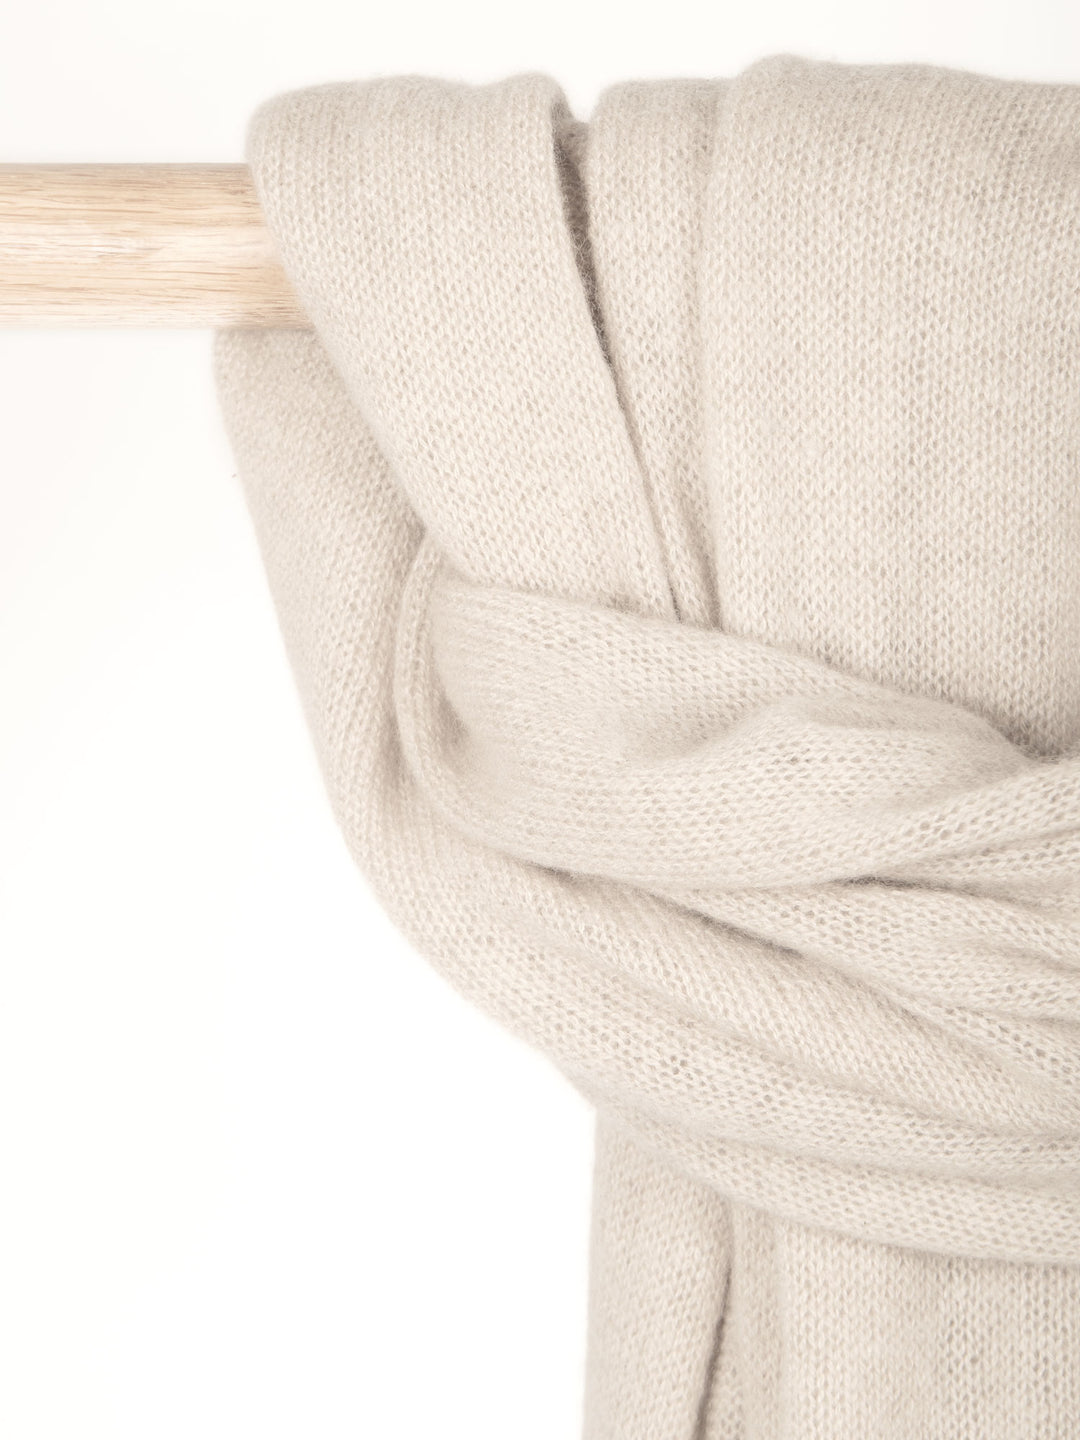 Cashmere scarf "Flow" 100% cashmere from Kashmina. Norwegian design. Color: Ginger.